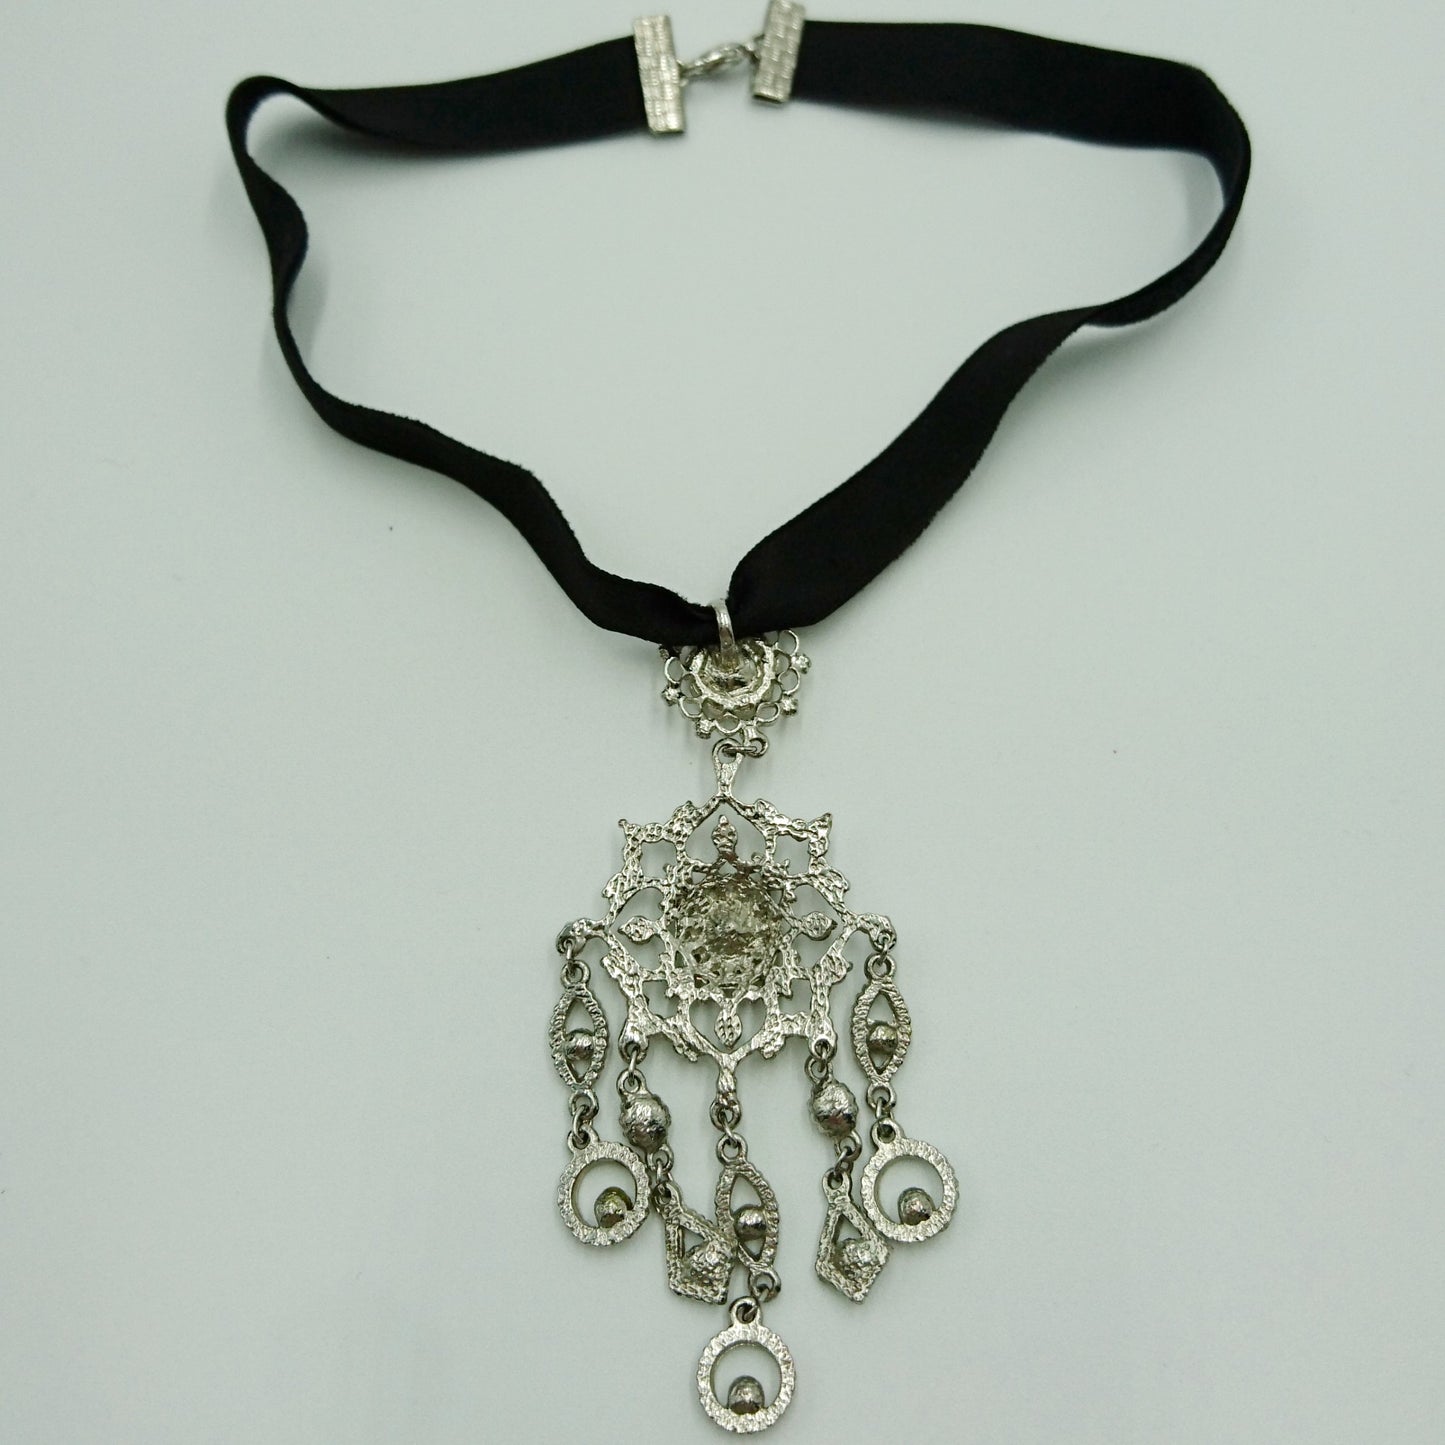 Vintage silvertone necklace